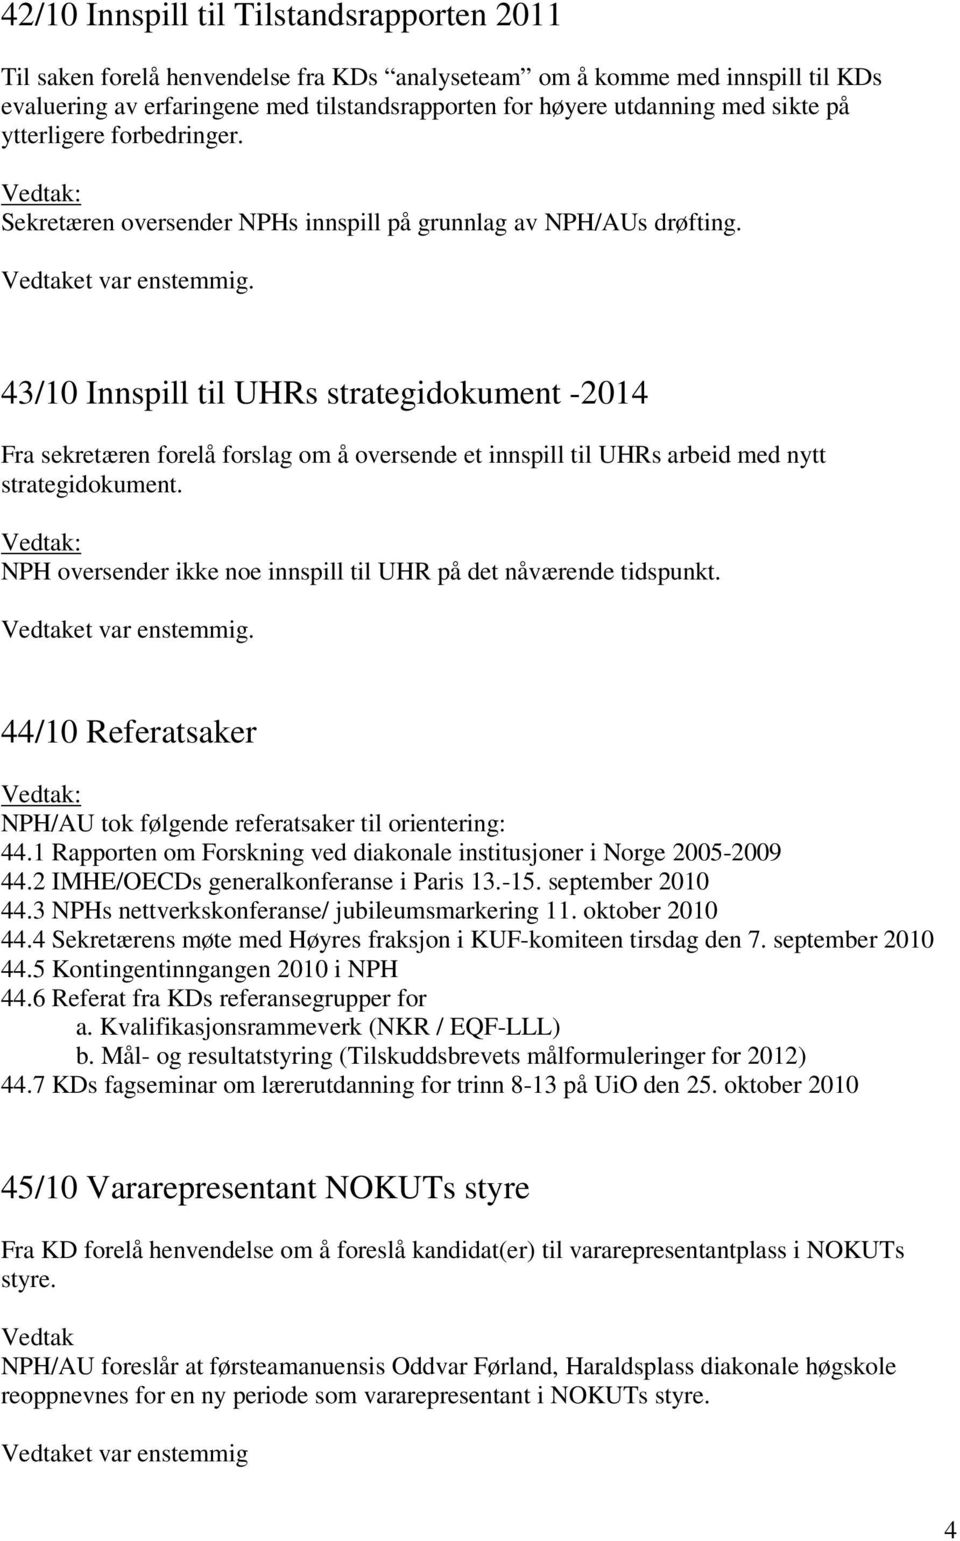 43/10 Innspill til UHRs strategidokument -2014 Fra sekretæren forelå forslag om å oversende et innspill til UHRs arbeid med nytt strategidokument.